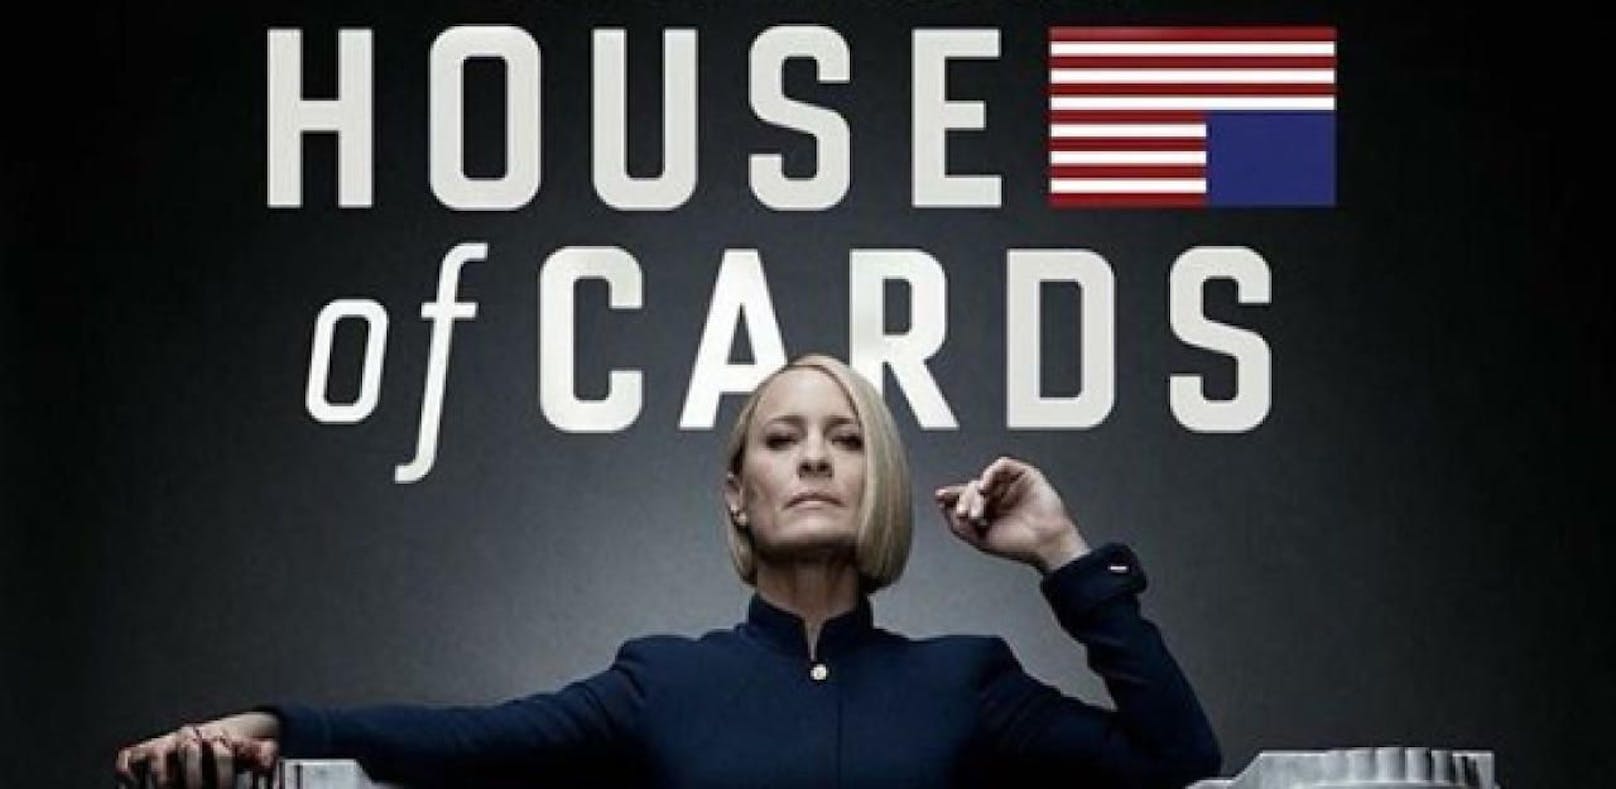 Letzte Staffel von "House of Cards" startet am 2.11.